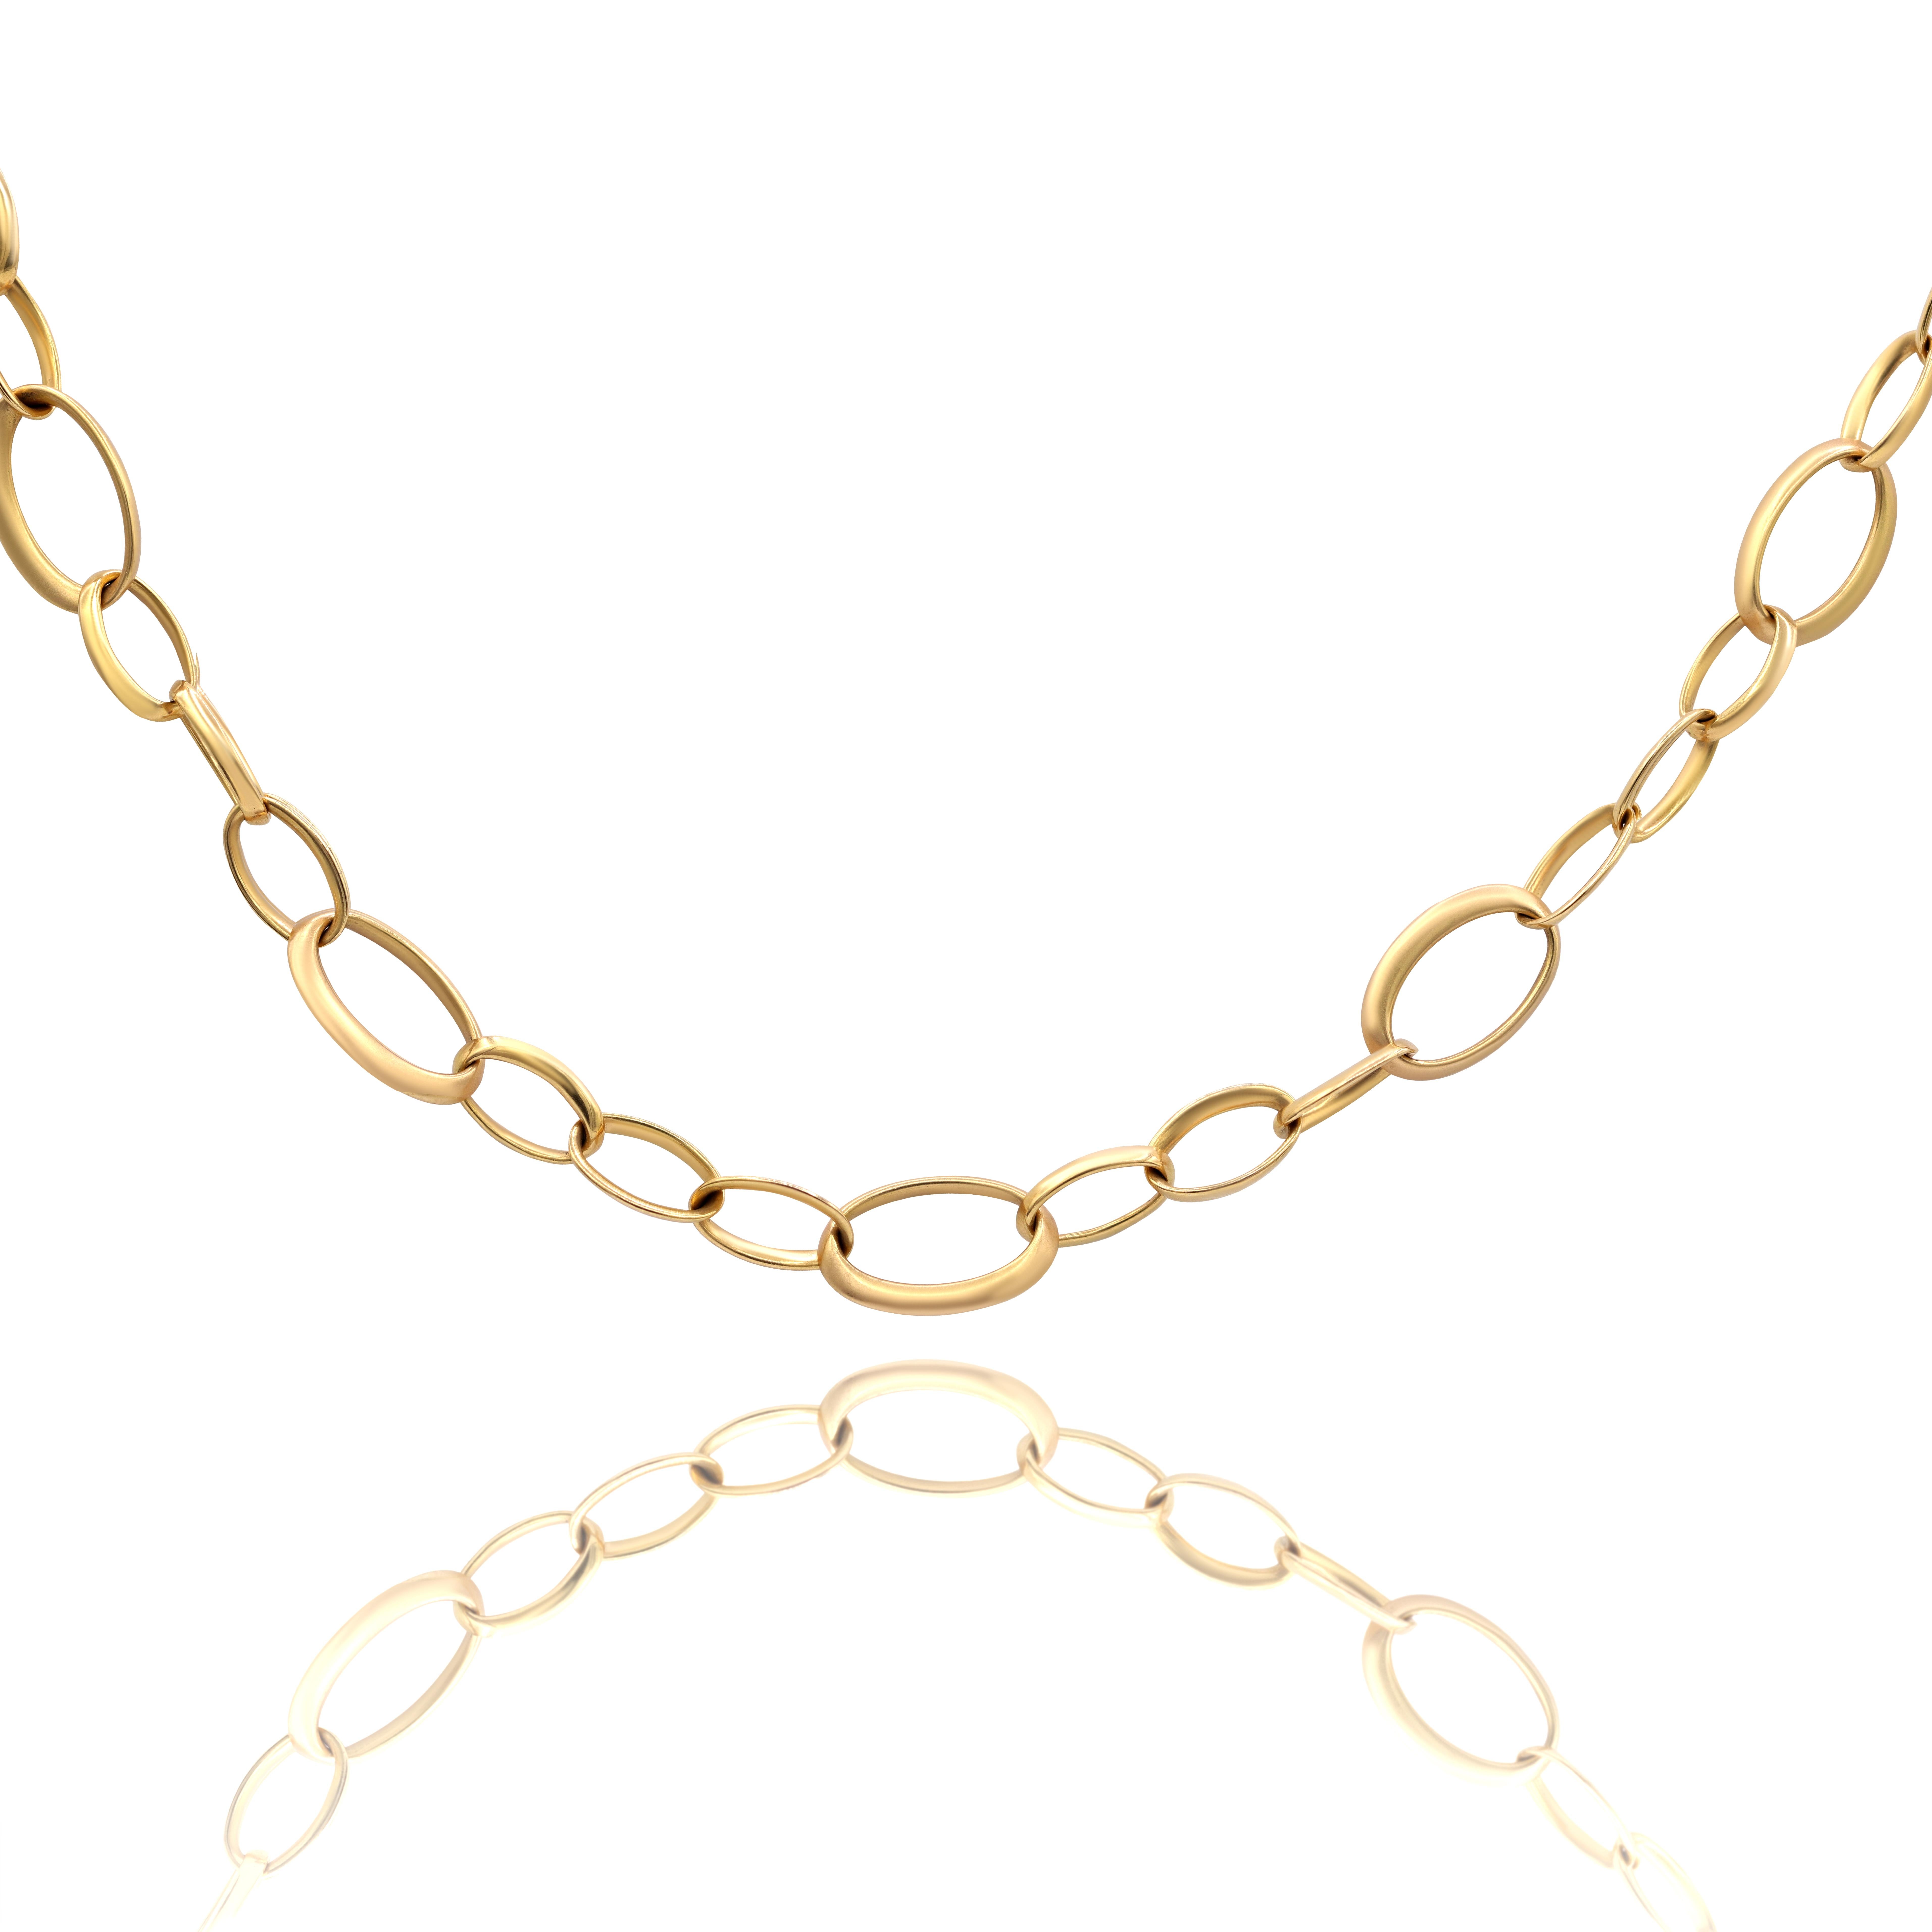 18KT Rose Gold, lange Halskette mit Gliedern.
Gewicht: 90 Gramm
Größenkategorie: 36